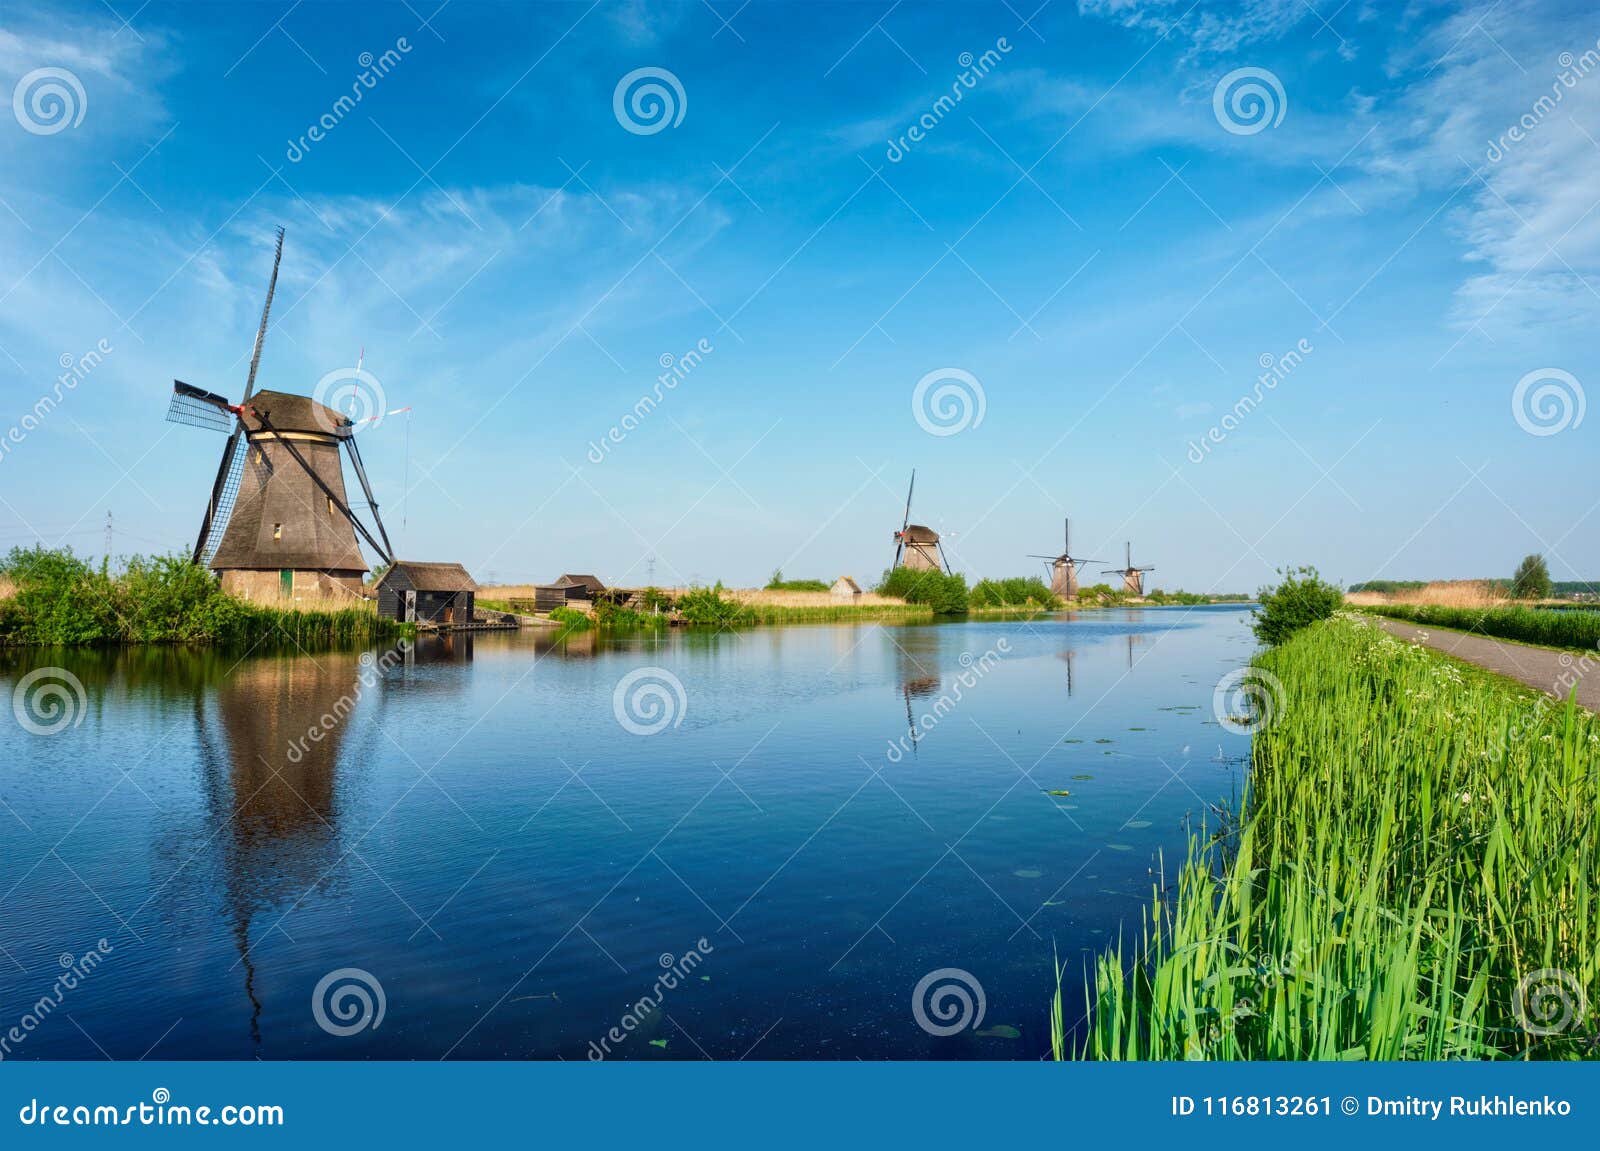 Kinderdijk: como visitar os mais famosos moinhos da Holanda